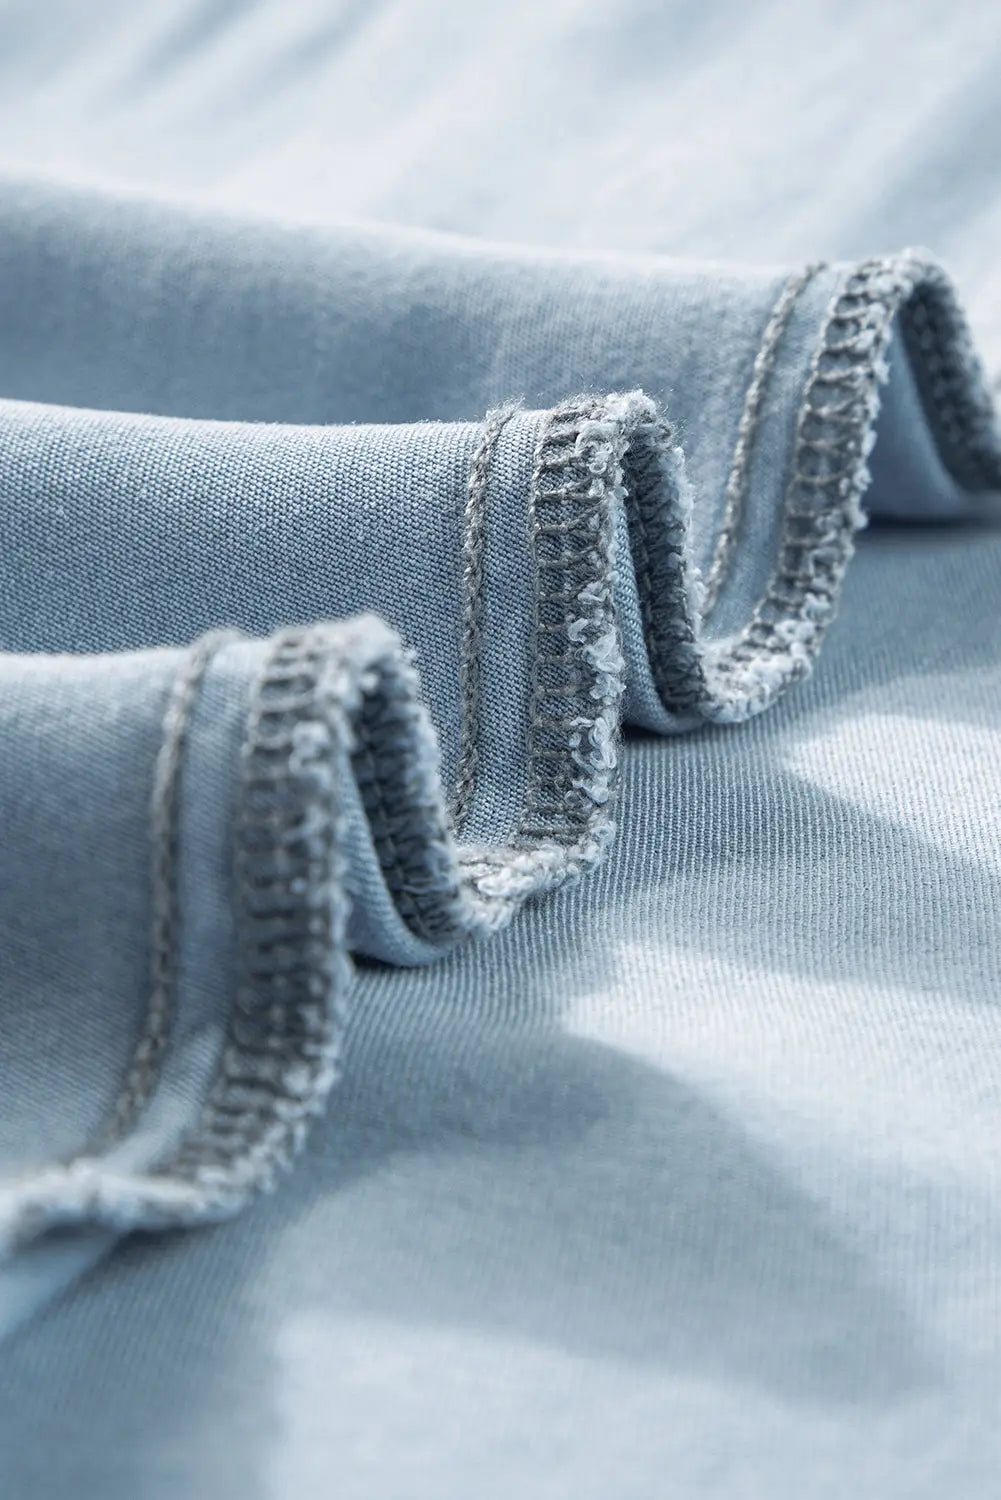 Mist blue fully buttoned long denim skirt - bottoms/skirts & petticoat